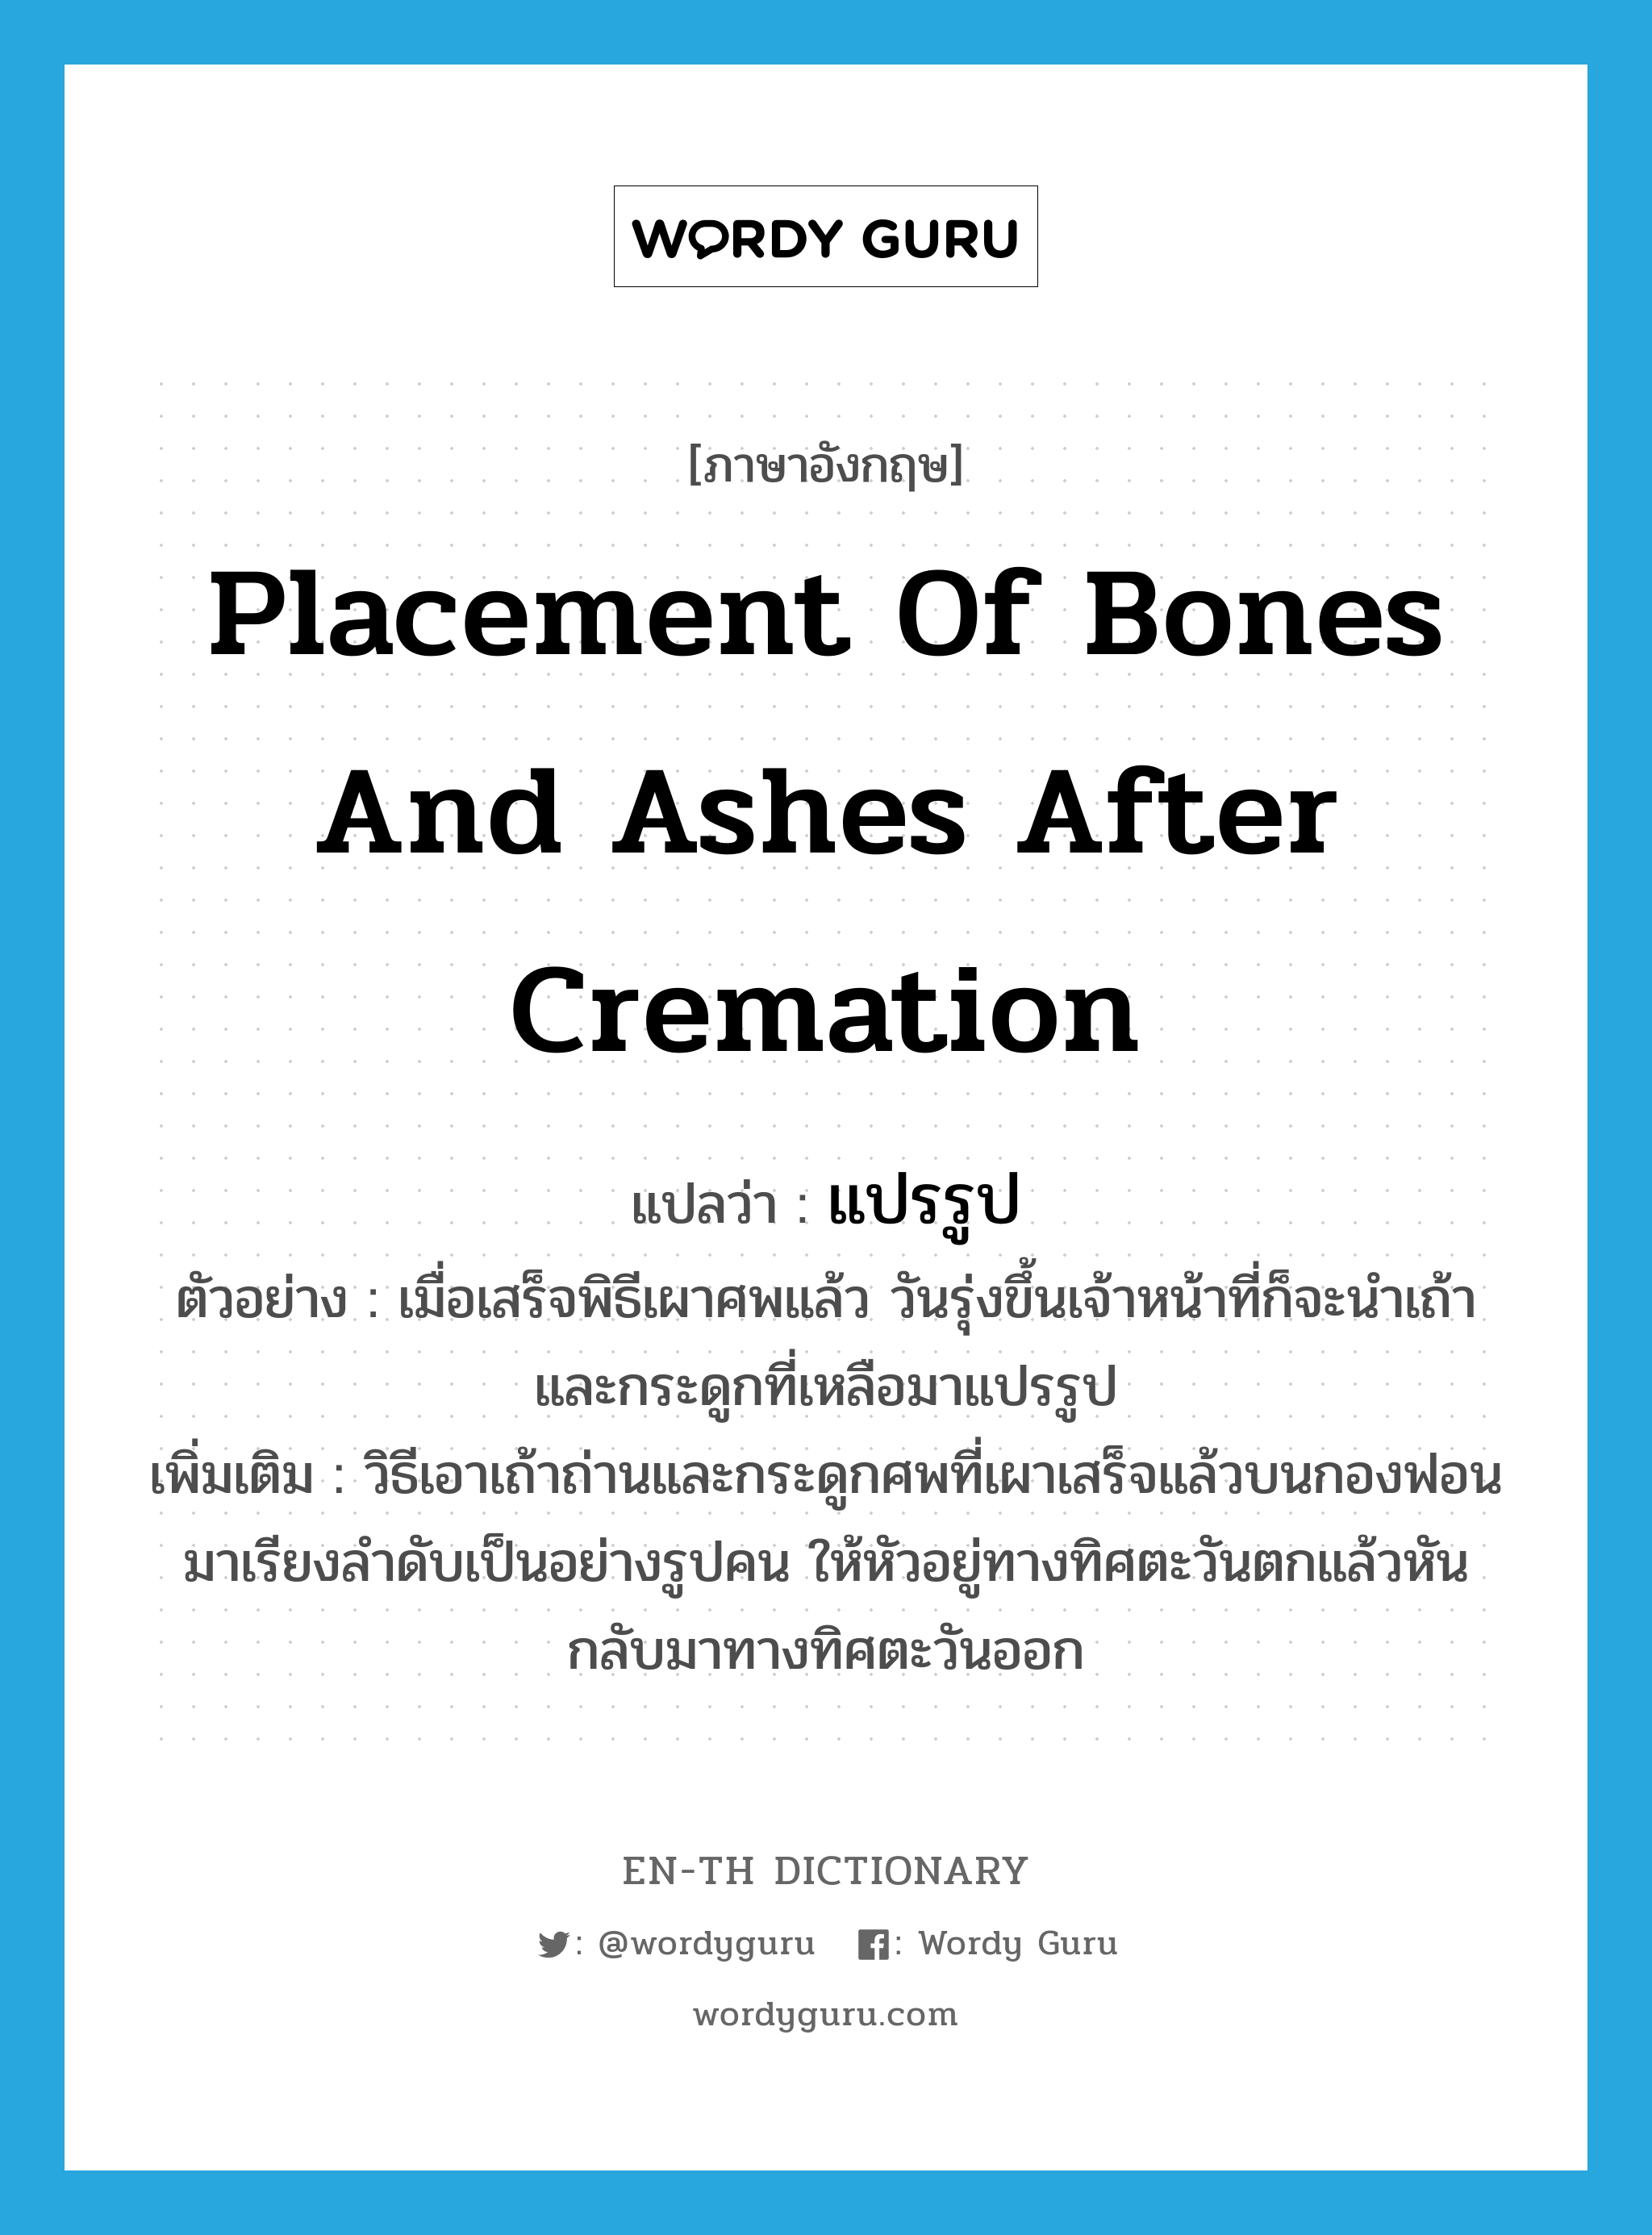 แปรรูป ภาษาอังกฤษ?, คำศัพท์ภาษาอังกฤษ แปรรูป แปลว่า placement of bones and ashes after cremation ประเภท N ตัวอย่าง เมื่อเสร็จพิธีเผาศพแล้ว วันรุ่งขึ้นเจ้าหน้าที่ก็จะนำเถ้าและกระดูกที่เหลือมาแปรรูป เพิ่มเติม วิธีเอาเถ้าถ่านและกระดูกศพที่เผาเสร็จแล้วบนกองฟอนมาเรียงลำดับเป็นอย่างรูปคน ให้หัวอยู่ทางทิศตะวันตกแล้วหันกลับมาทางทิศตะวันออก หมวด N